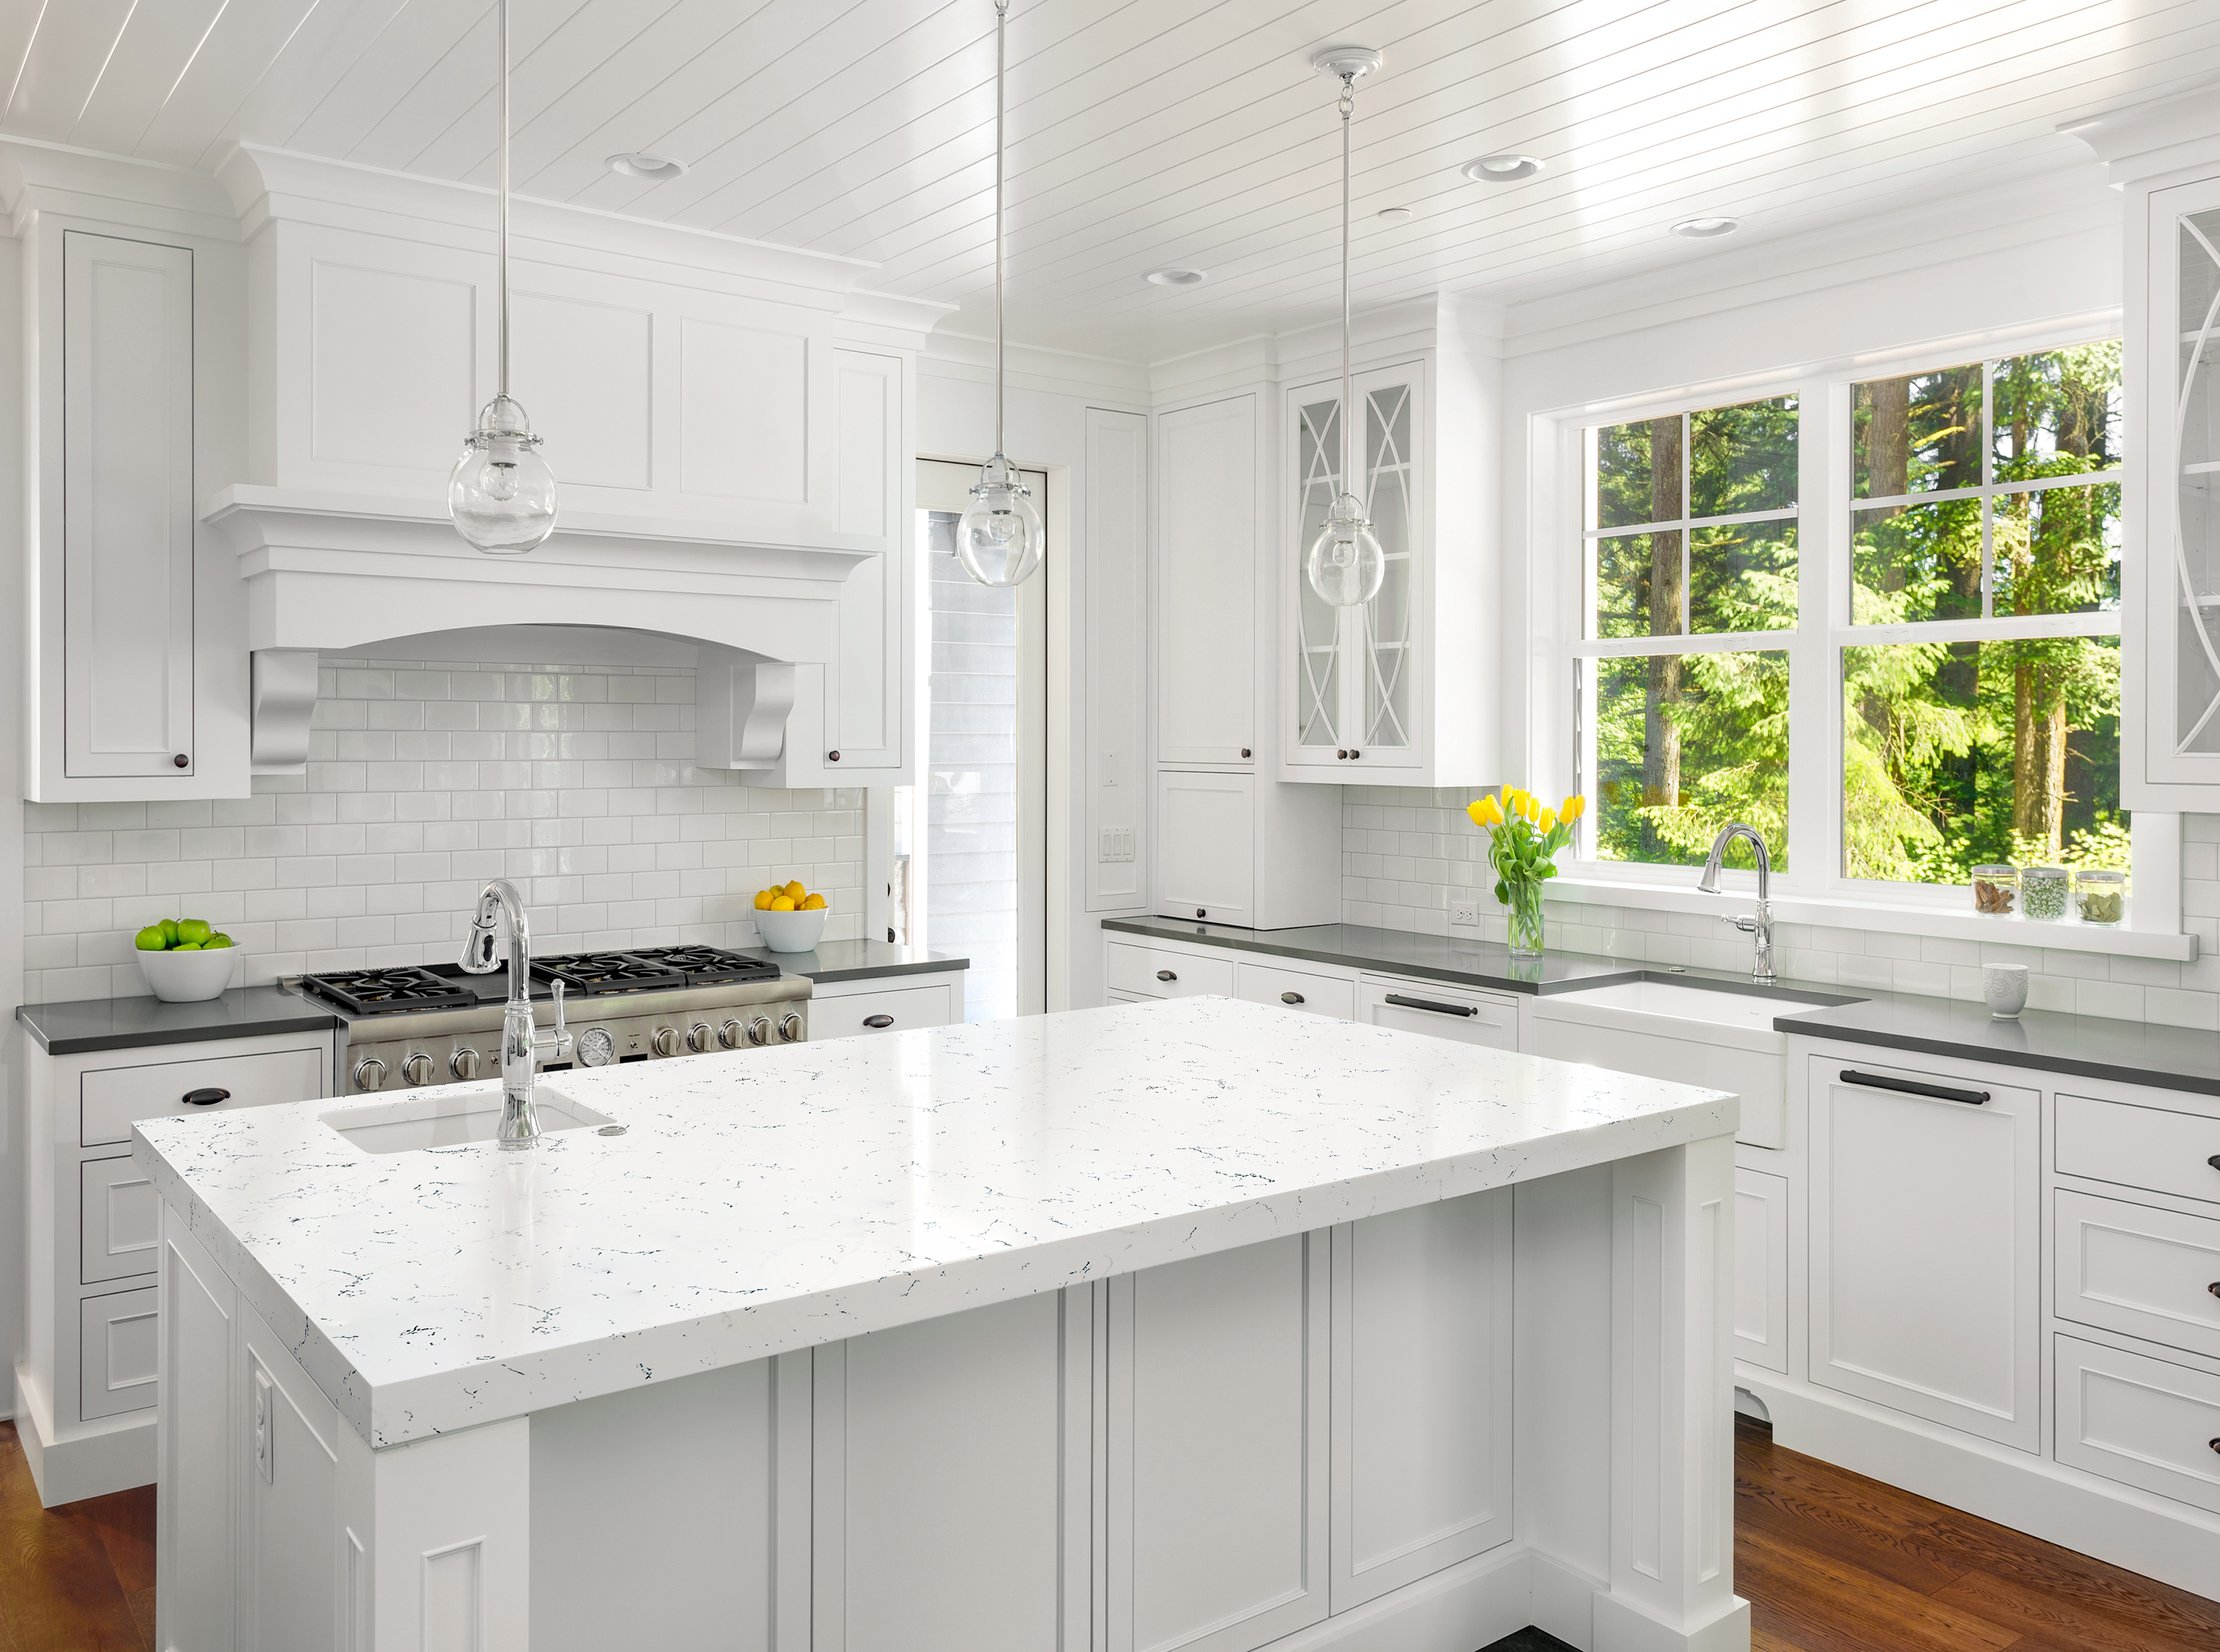 Kitchen Interior in New Luxury Home: White Kitchen with Island,